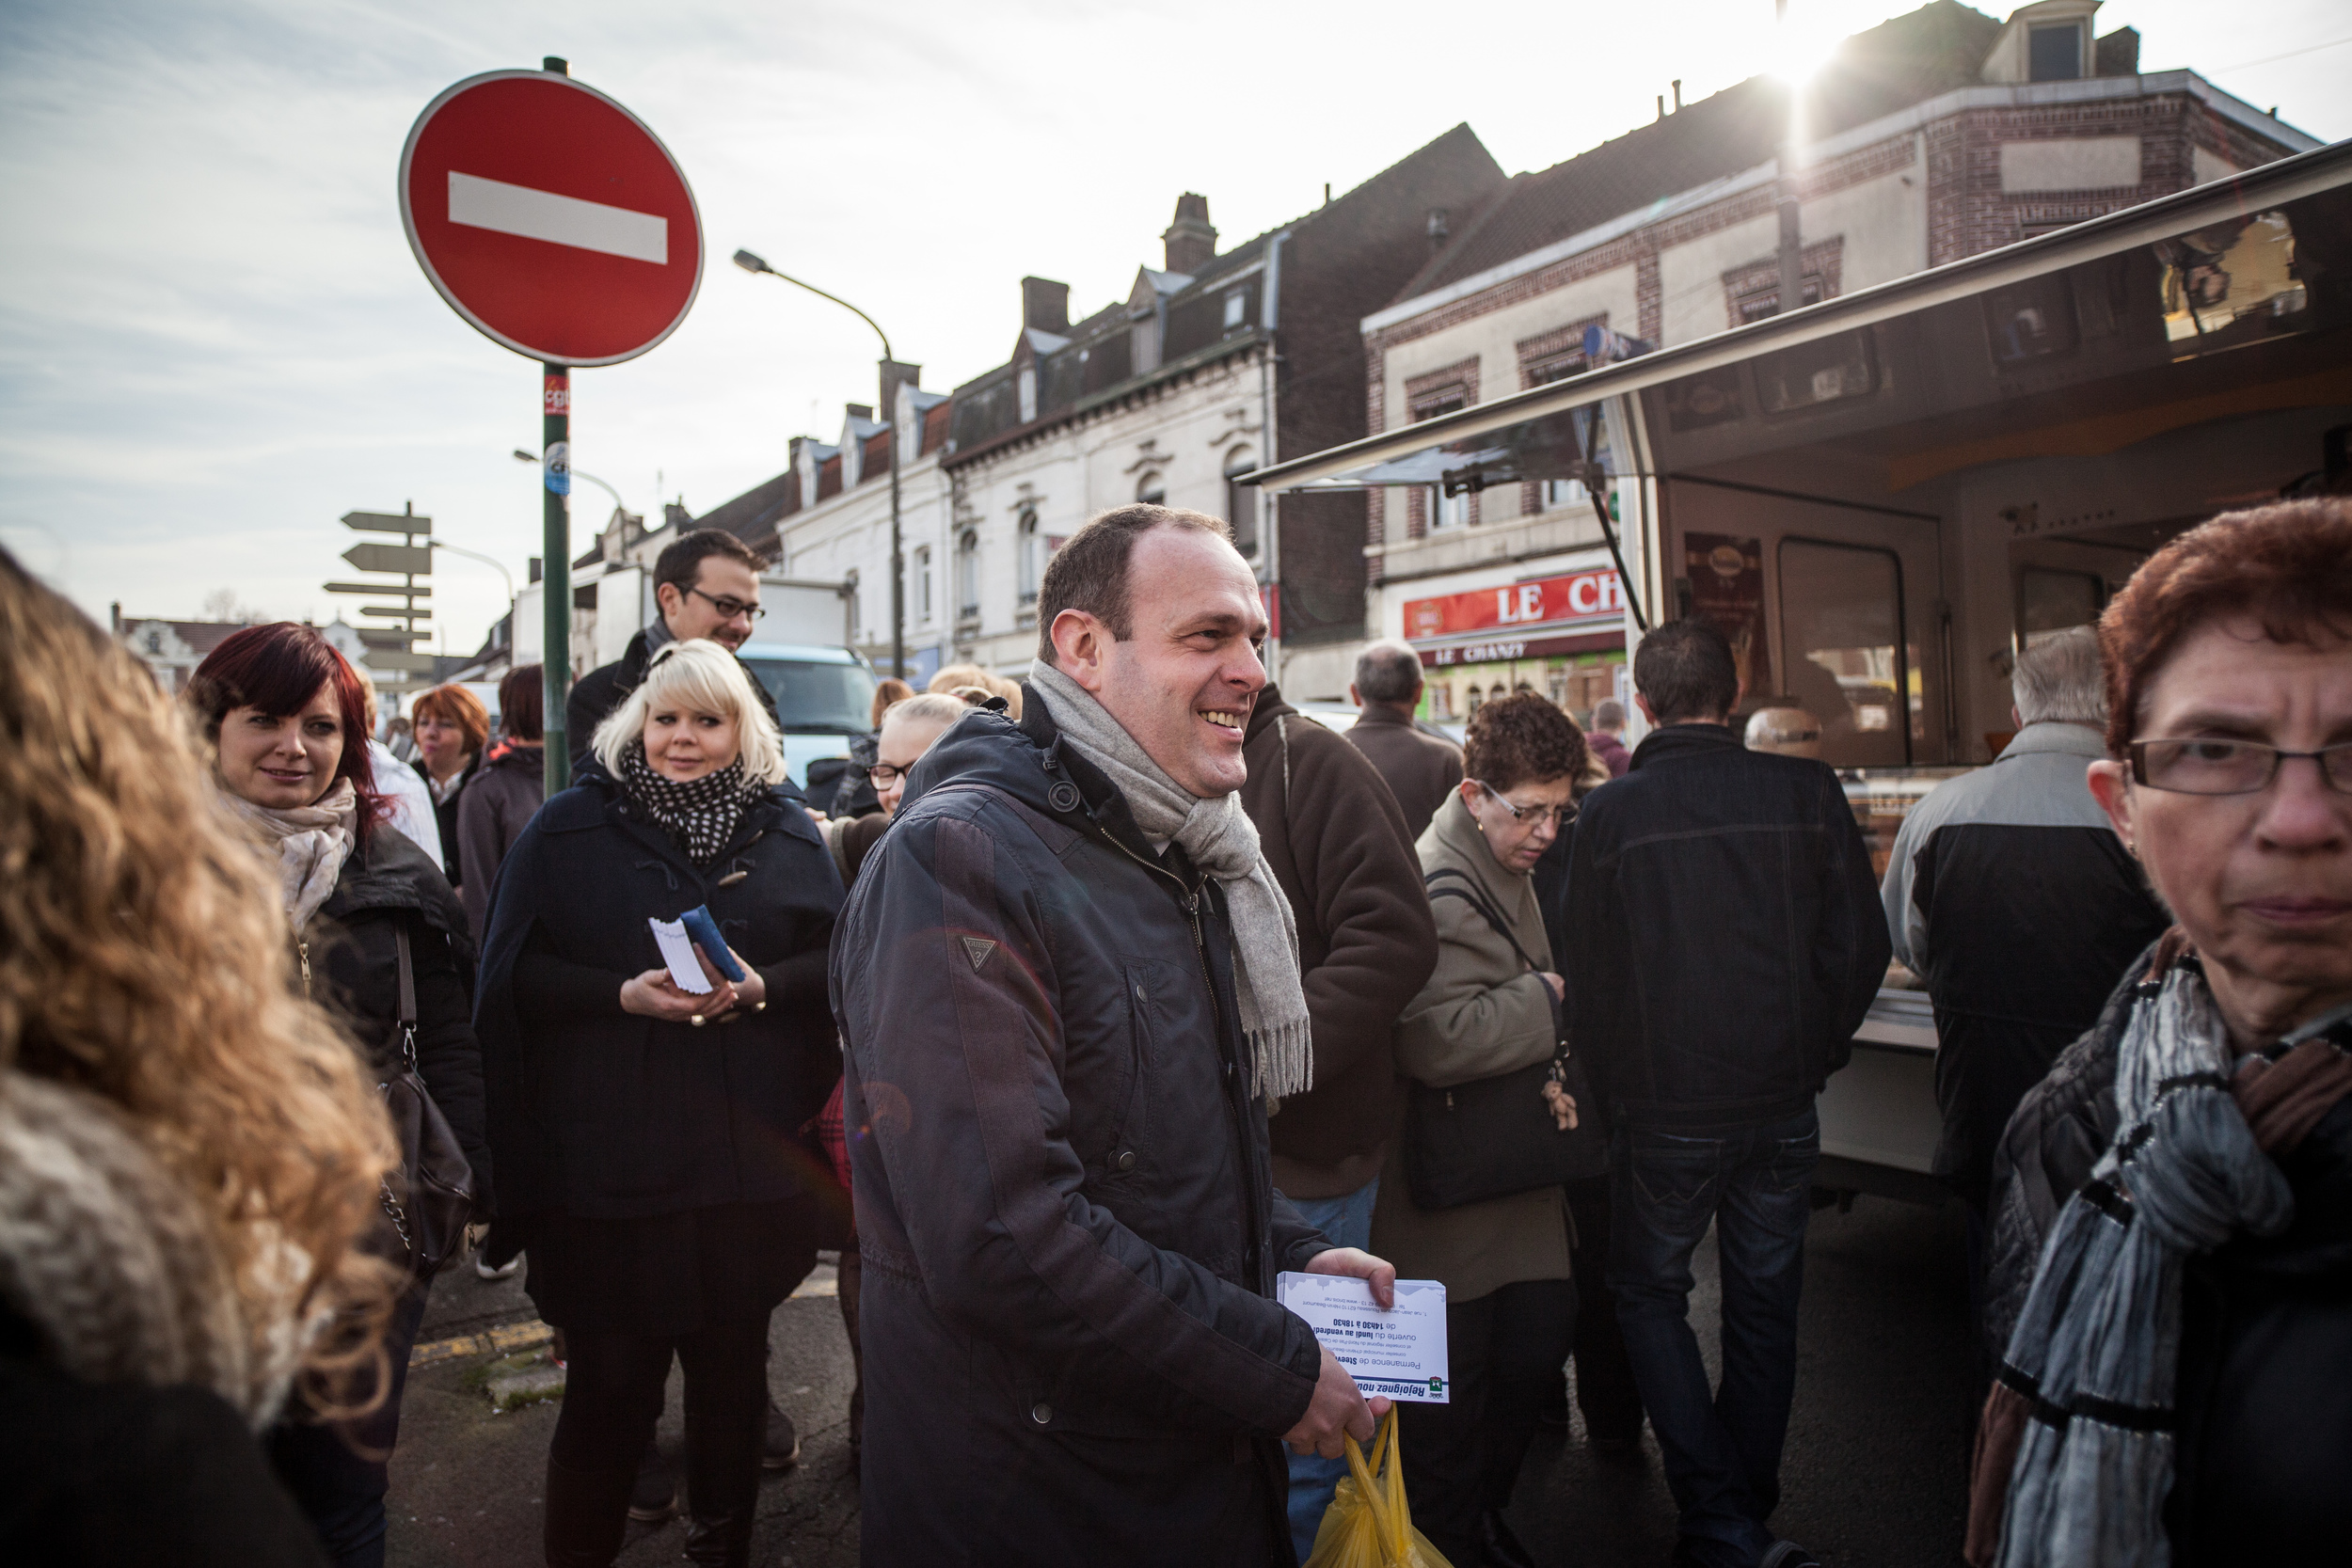  Reportage sur les élections municipales 2014 à Hénin-Beaumont. Steeve Briois est alors candidat FN. Il sera élu dès le premier tour.  Publié dans Croix du Nord. 